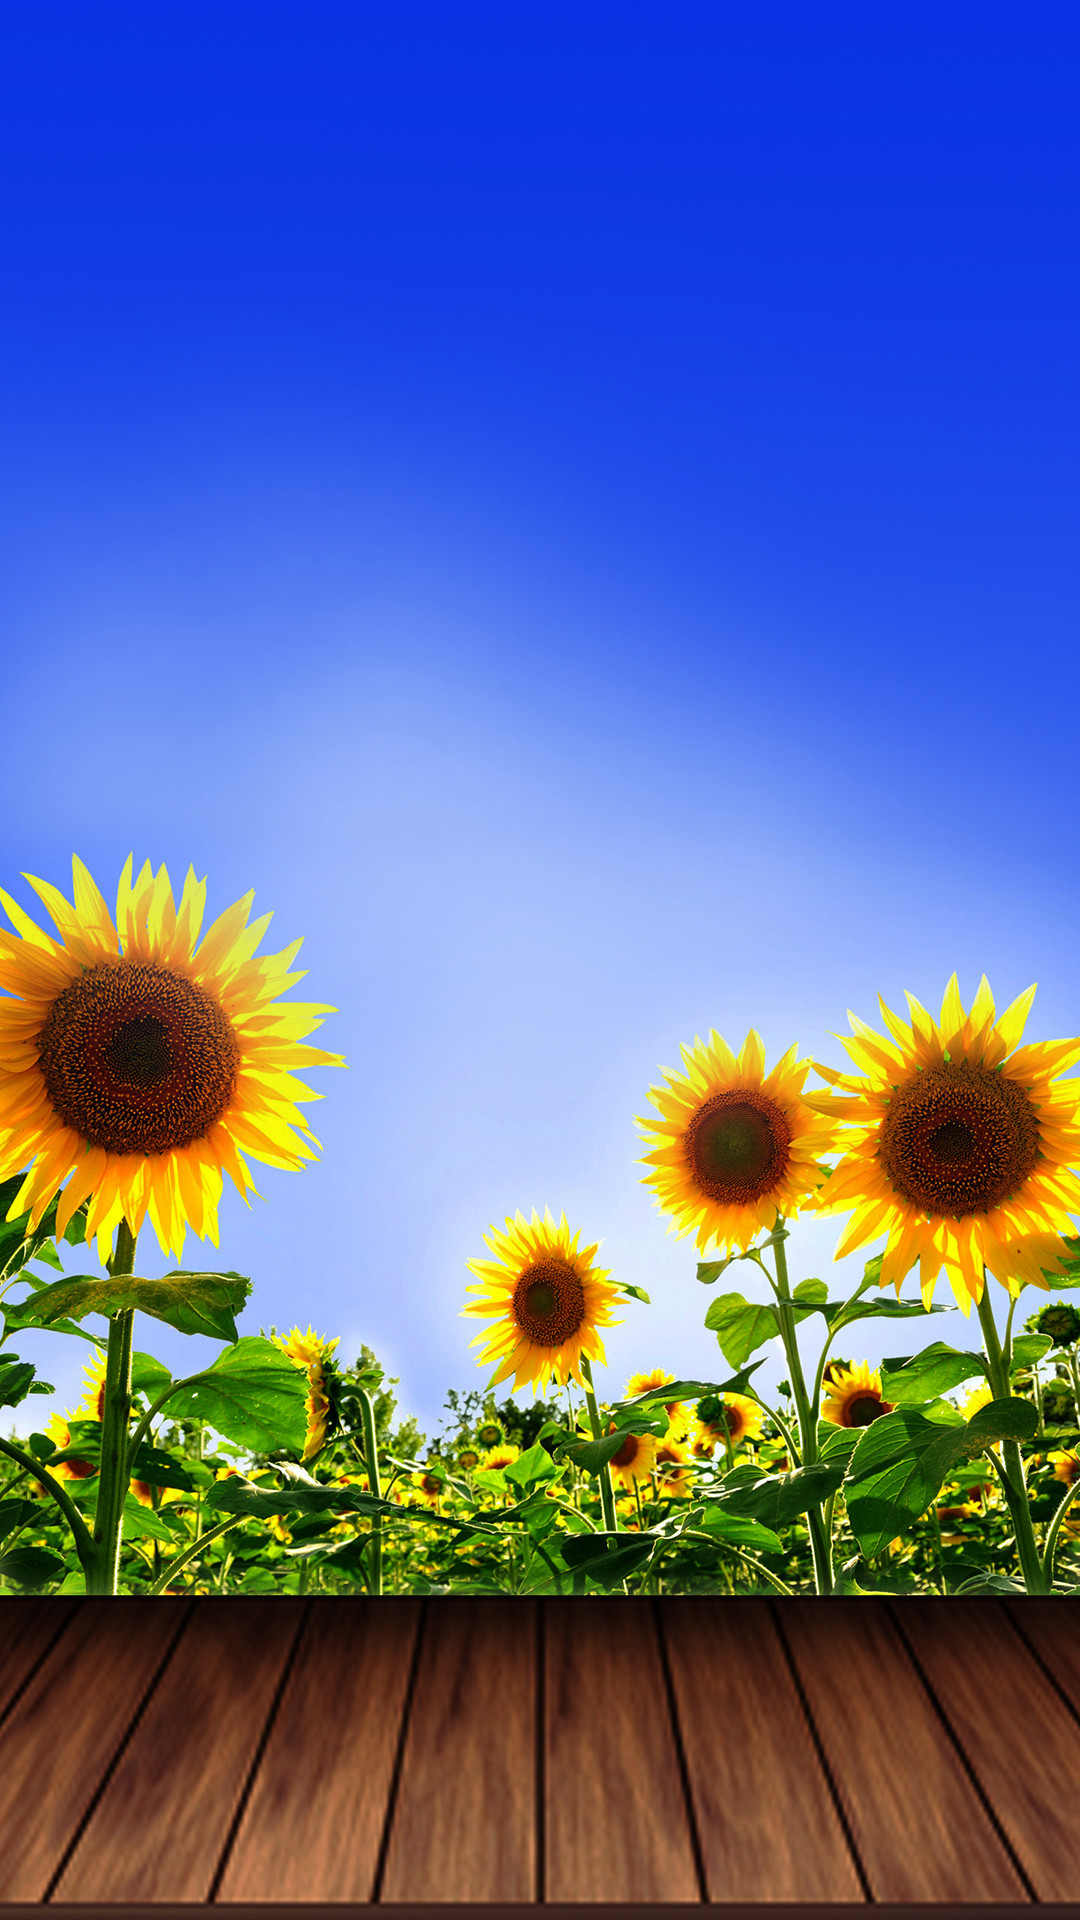 1080x1920 ... Summer Sunflower Wallpaper iPhone 6 by Mattiebonez